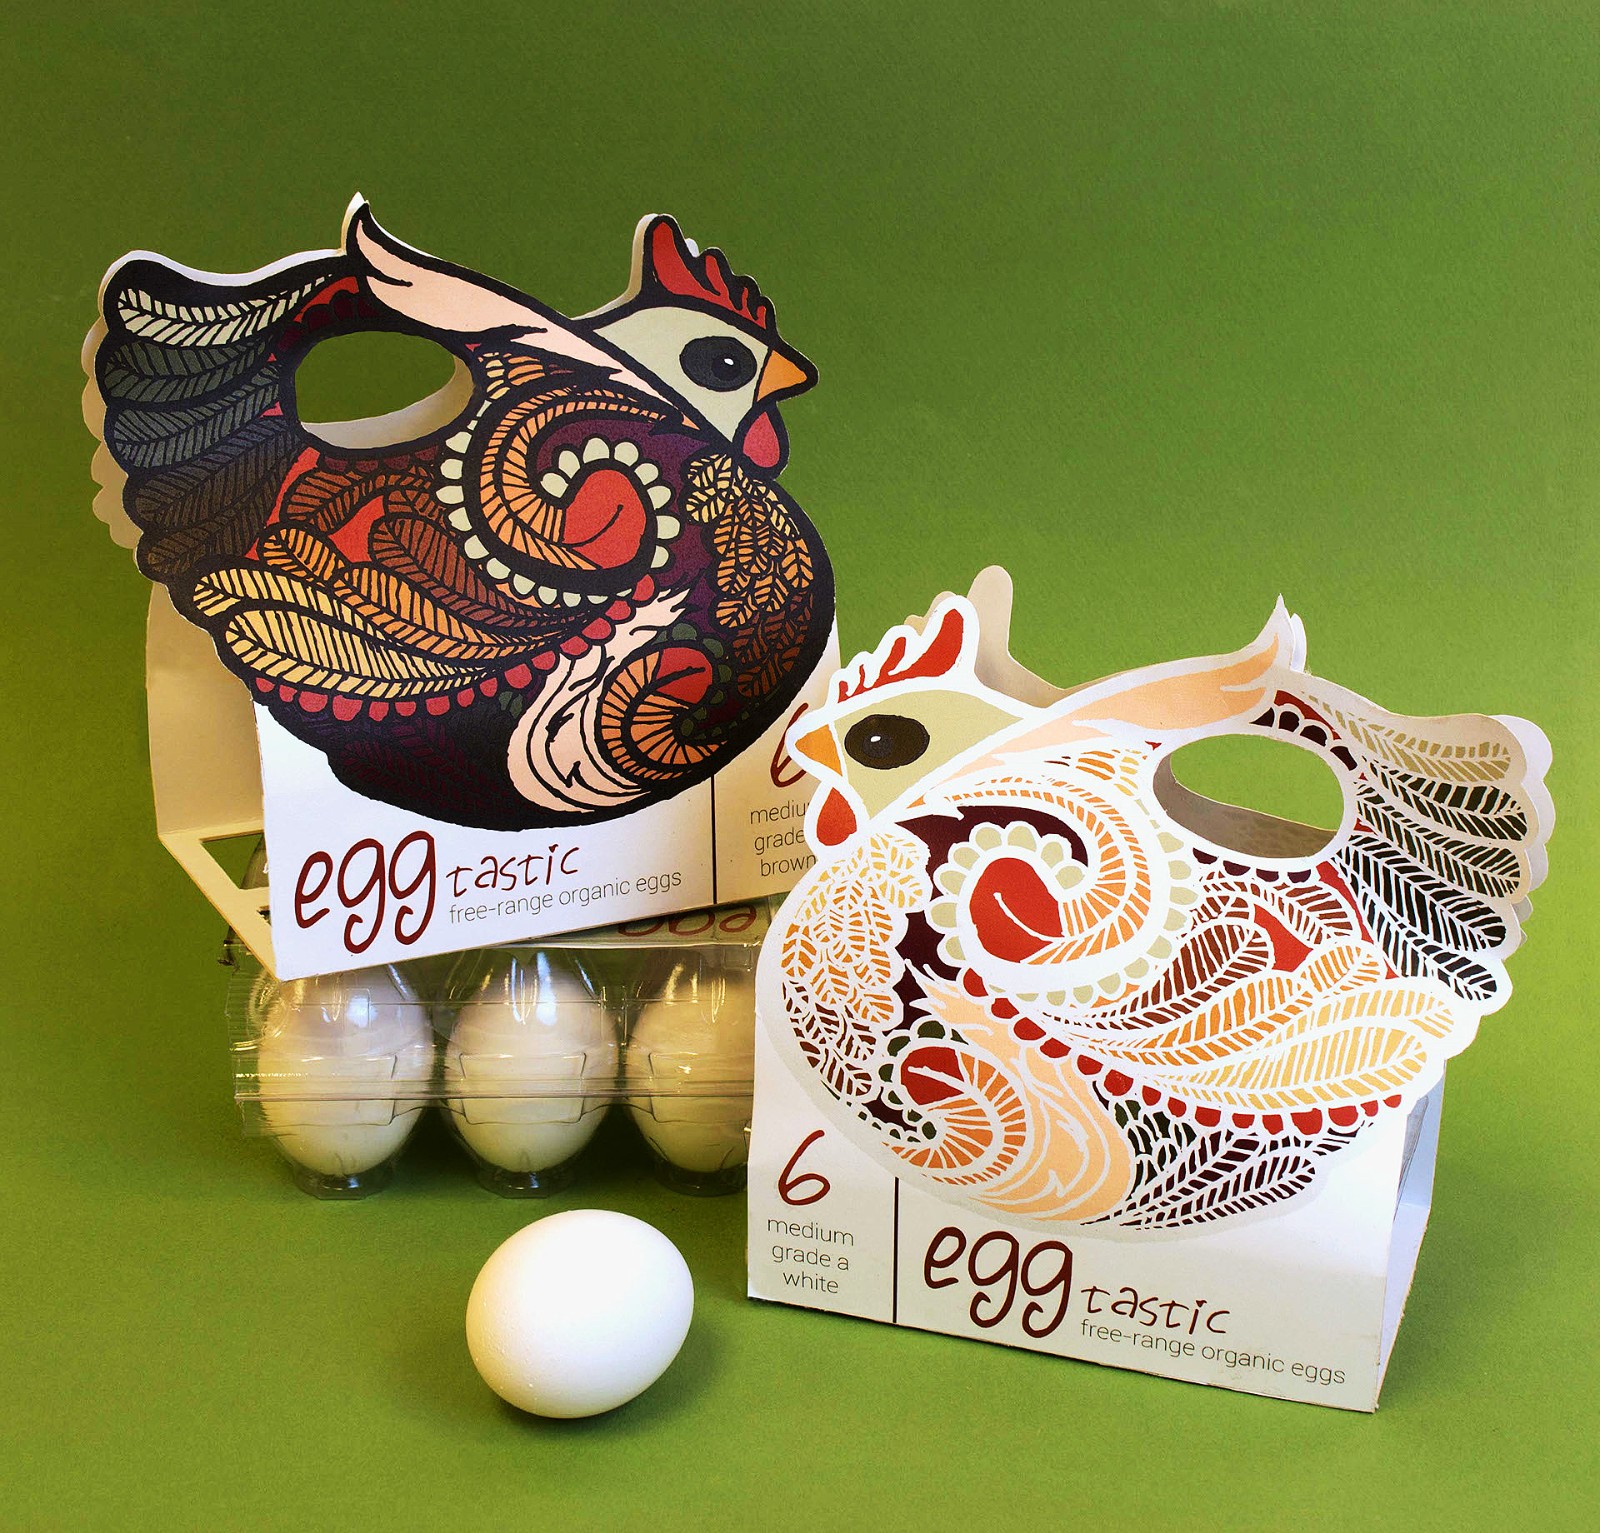 农产品鸡蛋包装设计案例赏析 